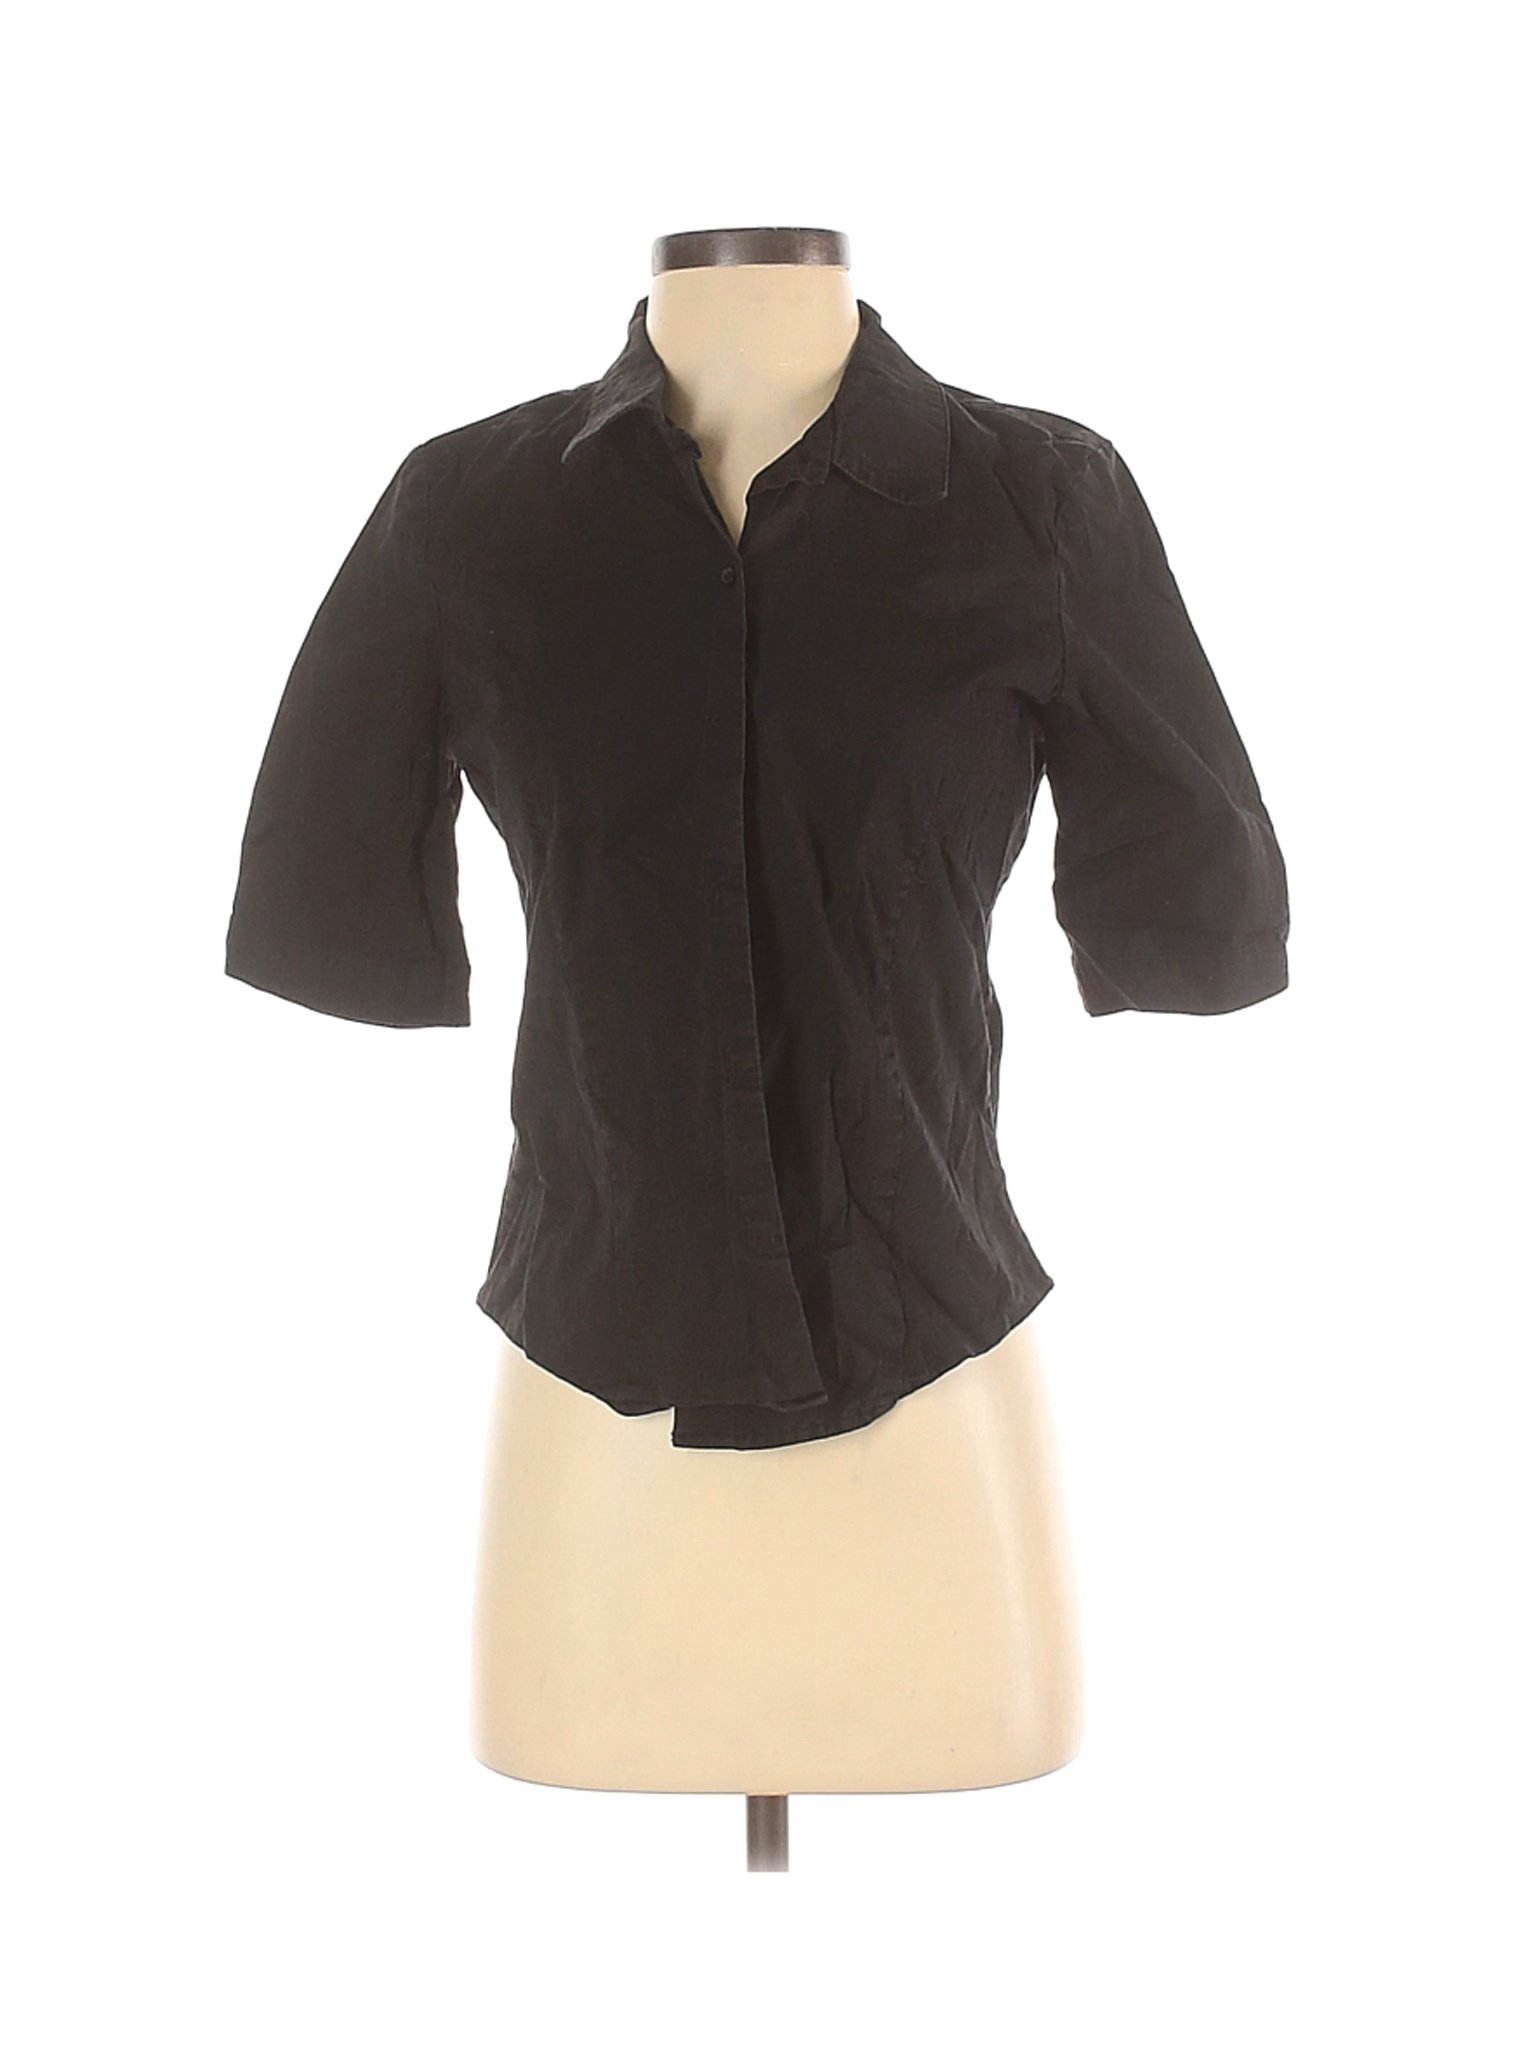 Gap Outlet Women Black Short Sleeve Button-Down Shirt S | eBay